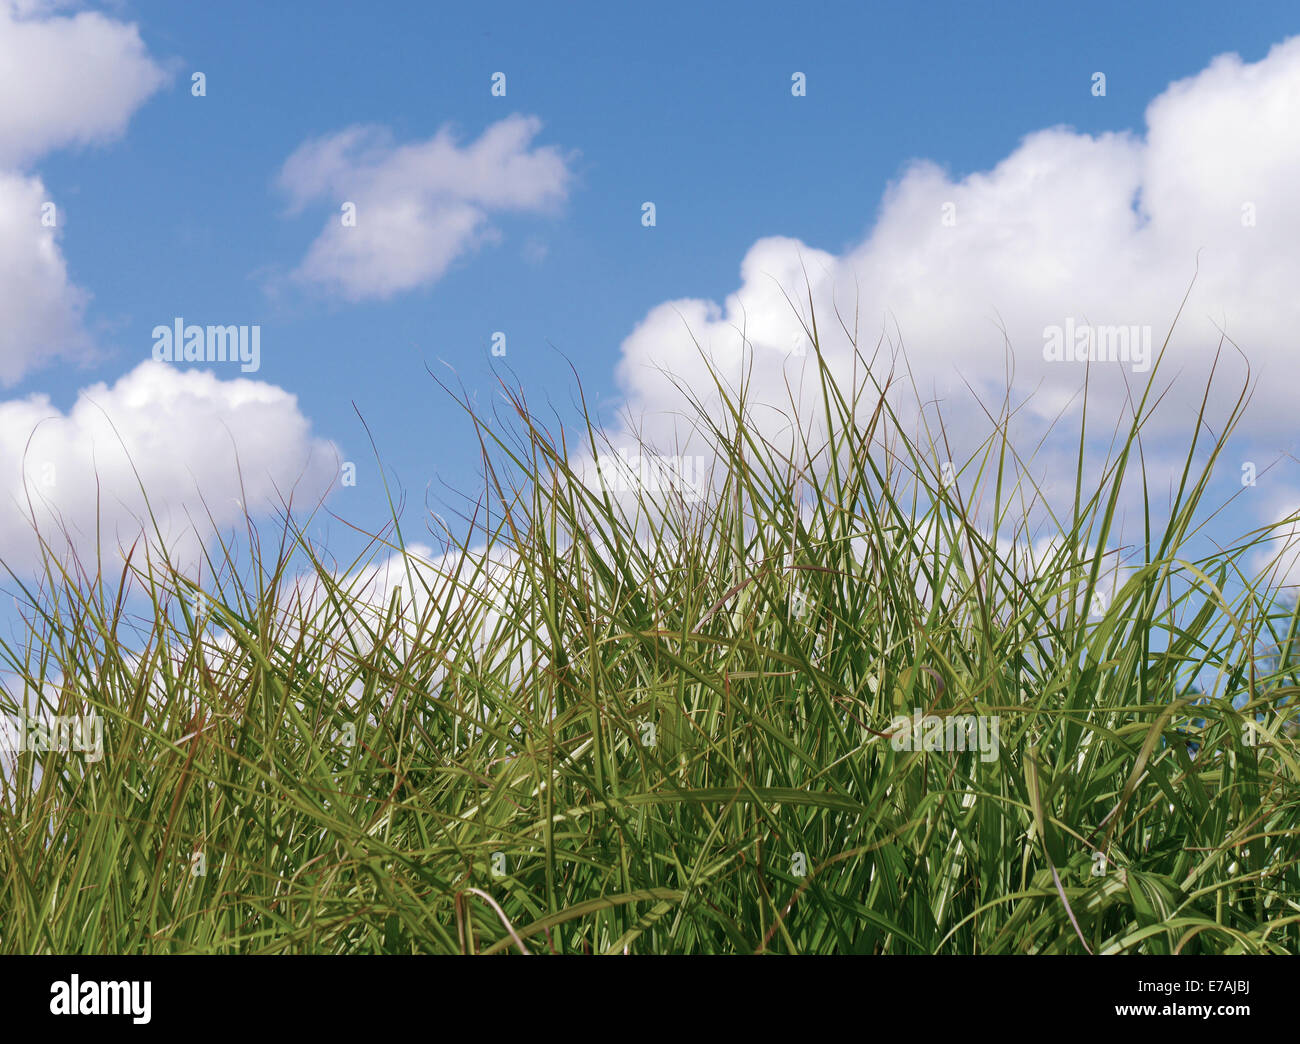 Nahaufnahme des rauhen Grases mit bewölkten blauen Himmel im Hintergrund Stockfoto